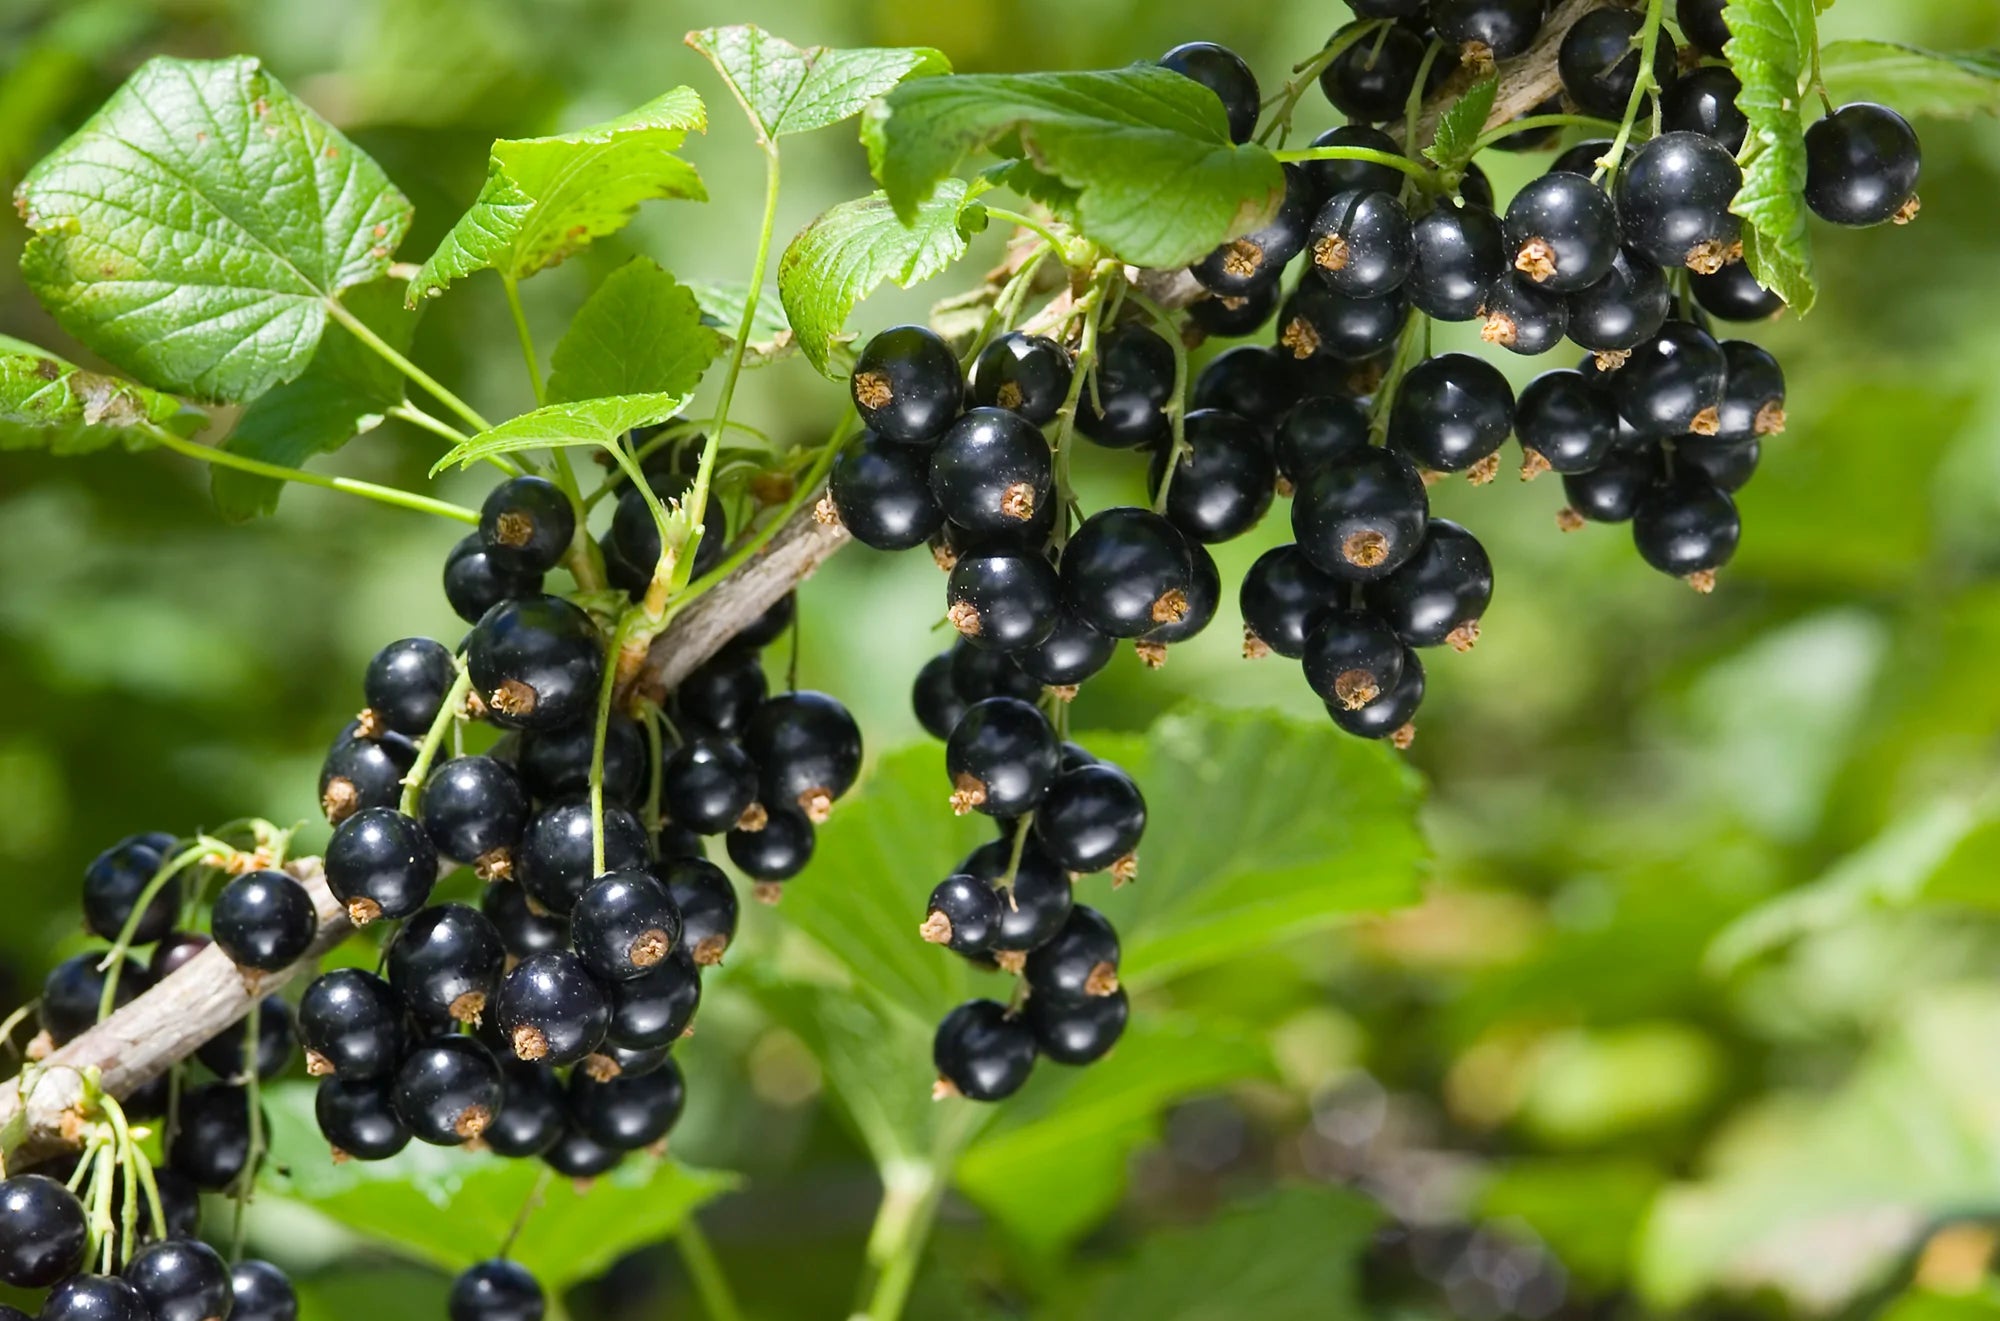 New Zealand blackcurrant berries